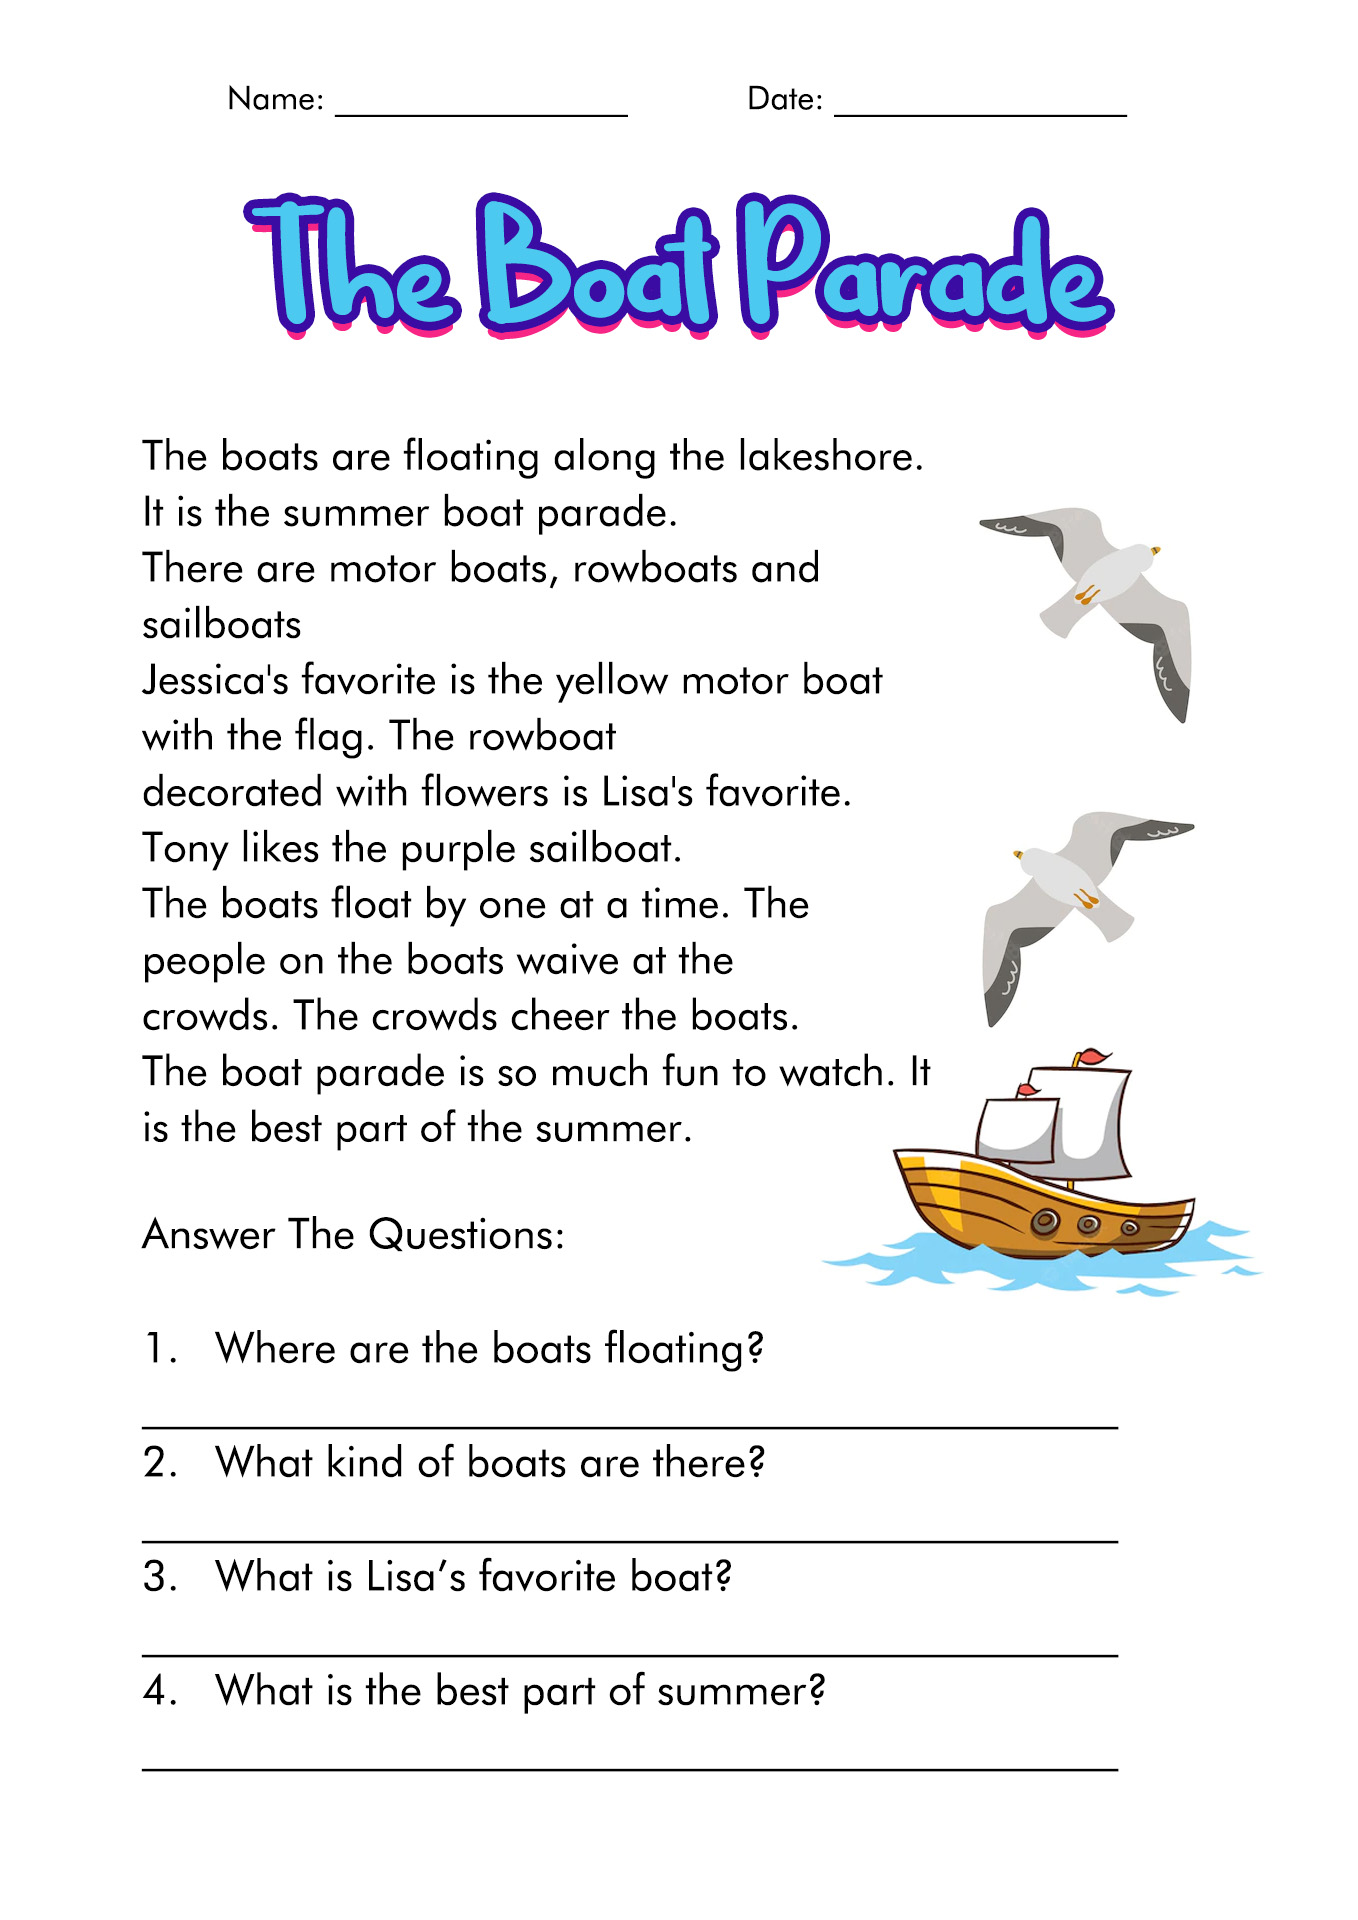 Reading Comprehension Worksheets Grade 3 Image